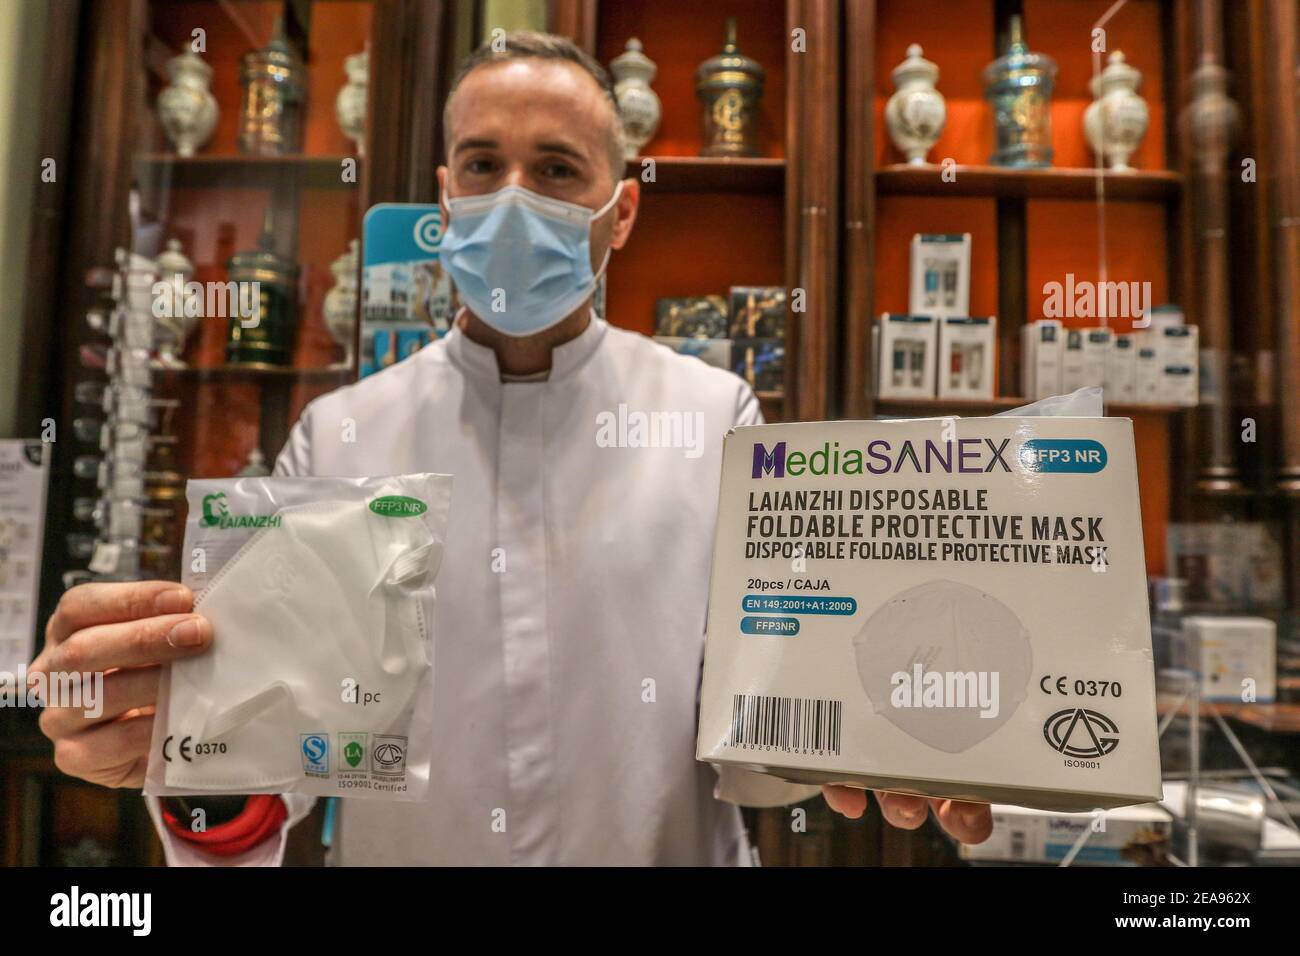 8 février 2021 : 8 février 2021 (Malaga) la demande de masques FFP2 triple. L'utilisation de protections plus sûres a stimulé les ventes. Aujourd'hui, le masque FFP3 est arrivé aux pharmacies de Malaga. Credit: Lorenzo Carnero/ZUMA Wire/Alay Live News Banque D'Images